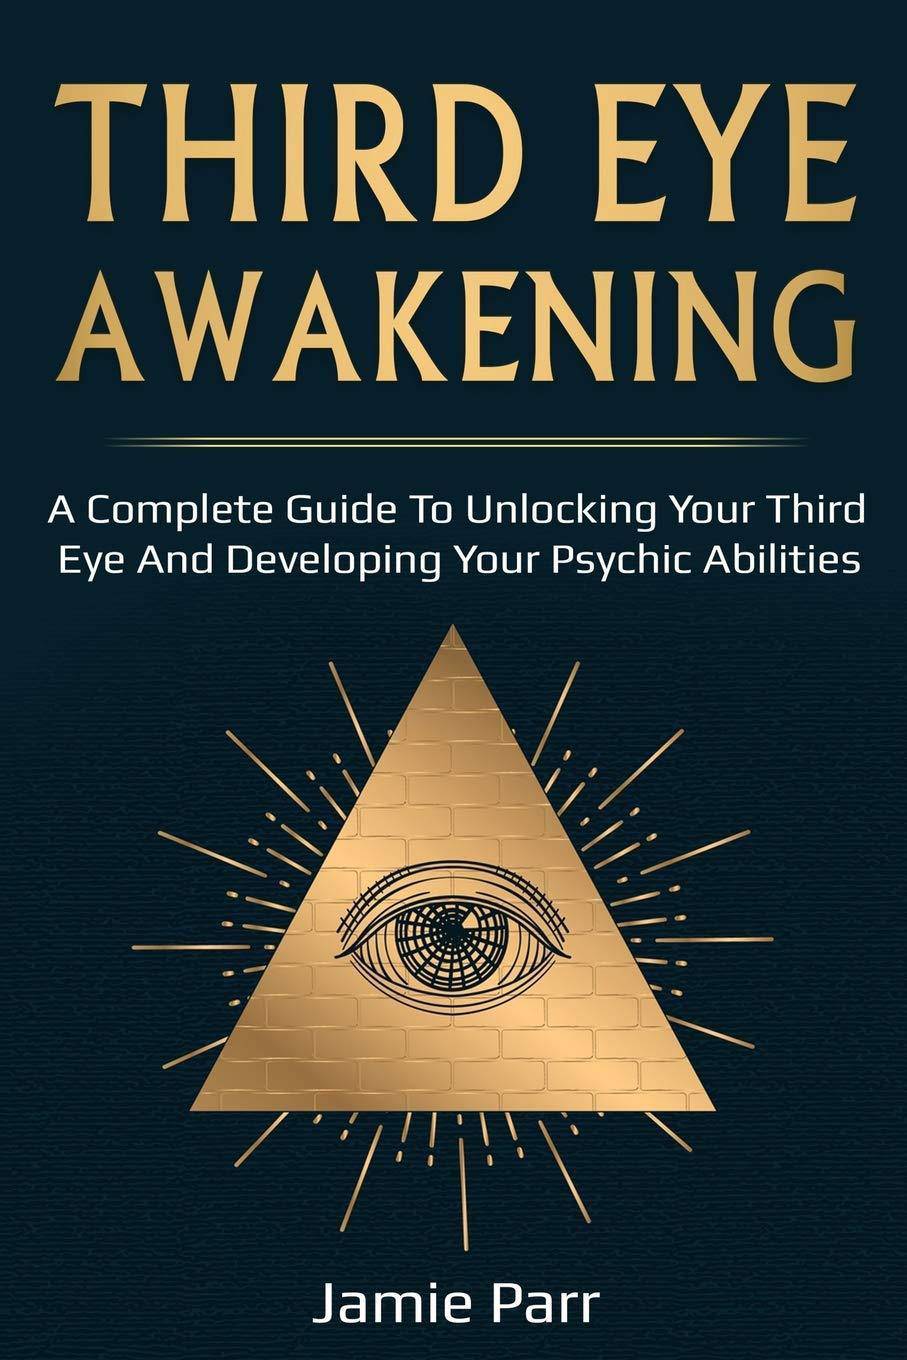 Third Eye Awakening: A Complete Guide to Awakening Your Third Ey - SureShot Books Publishing LLC